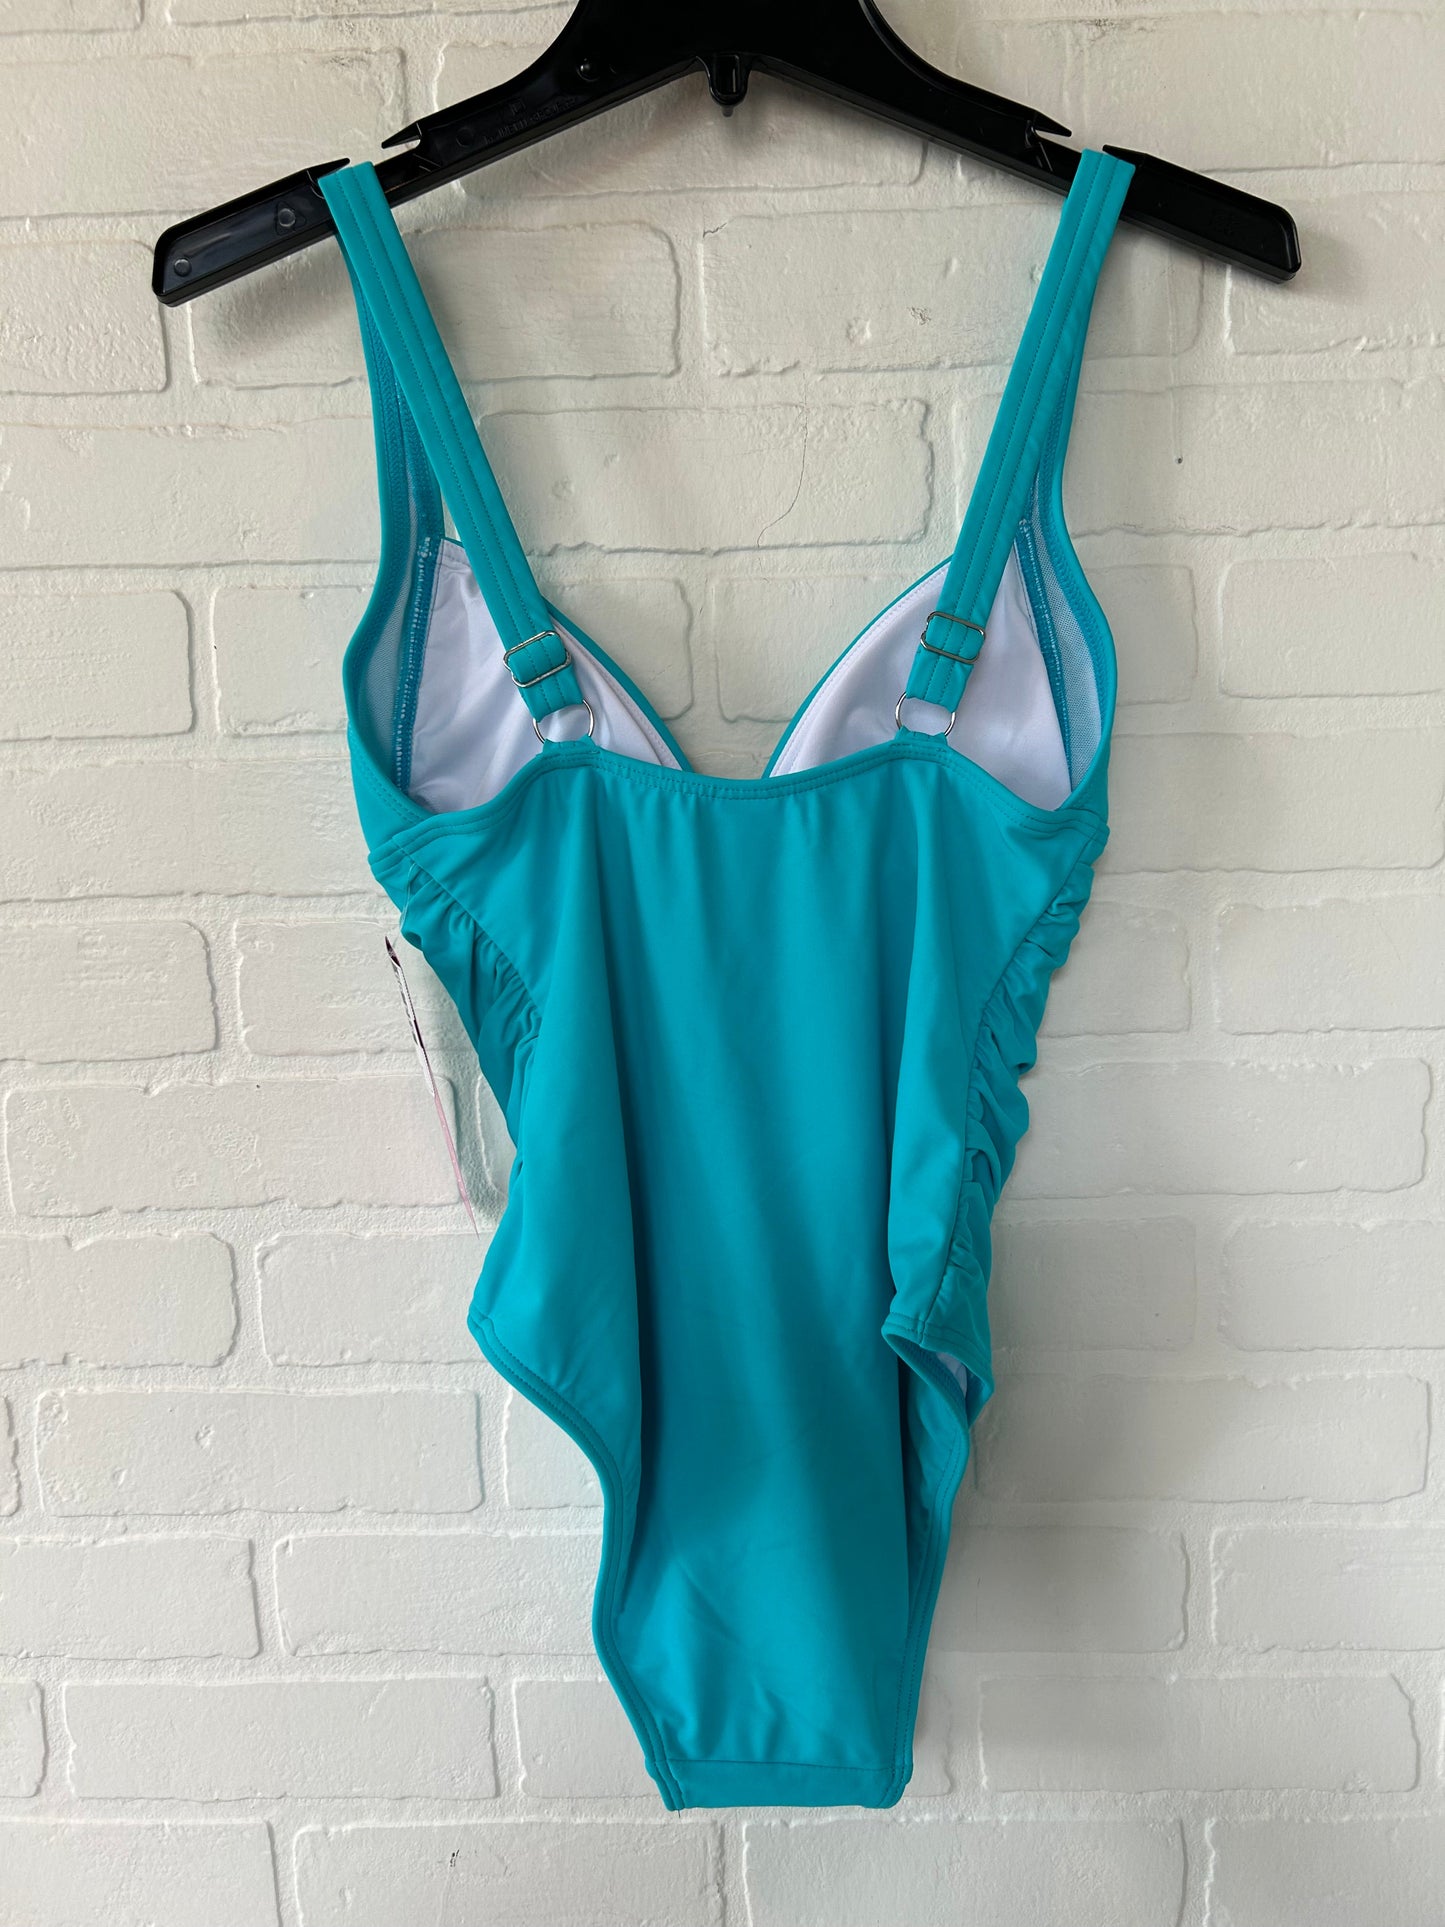 Blue Swimsuit Venus, Size S